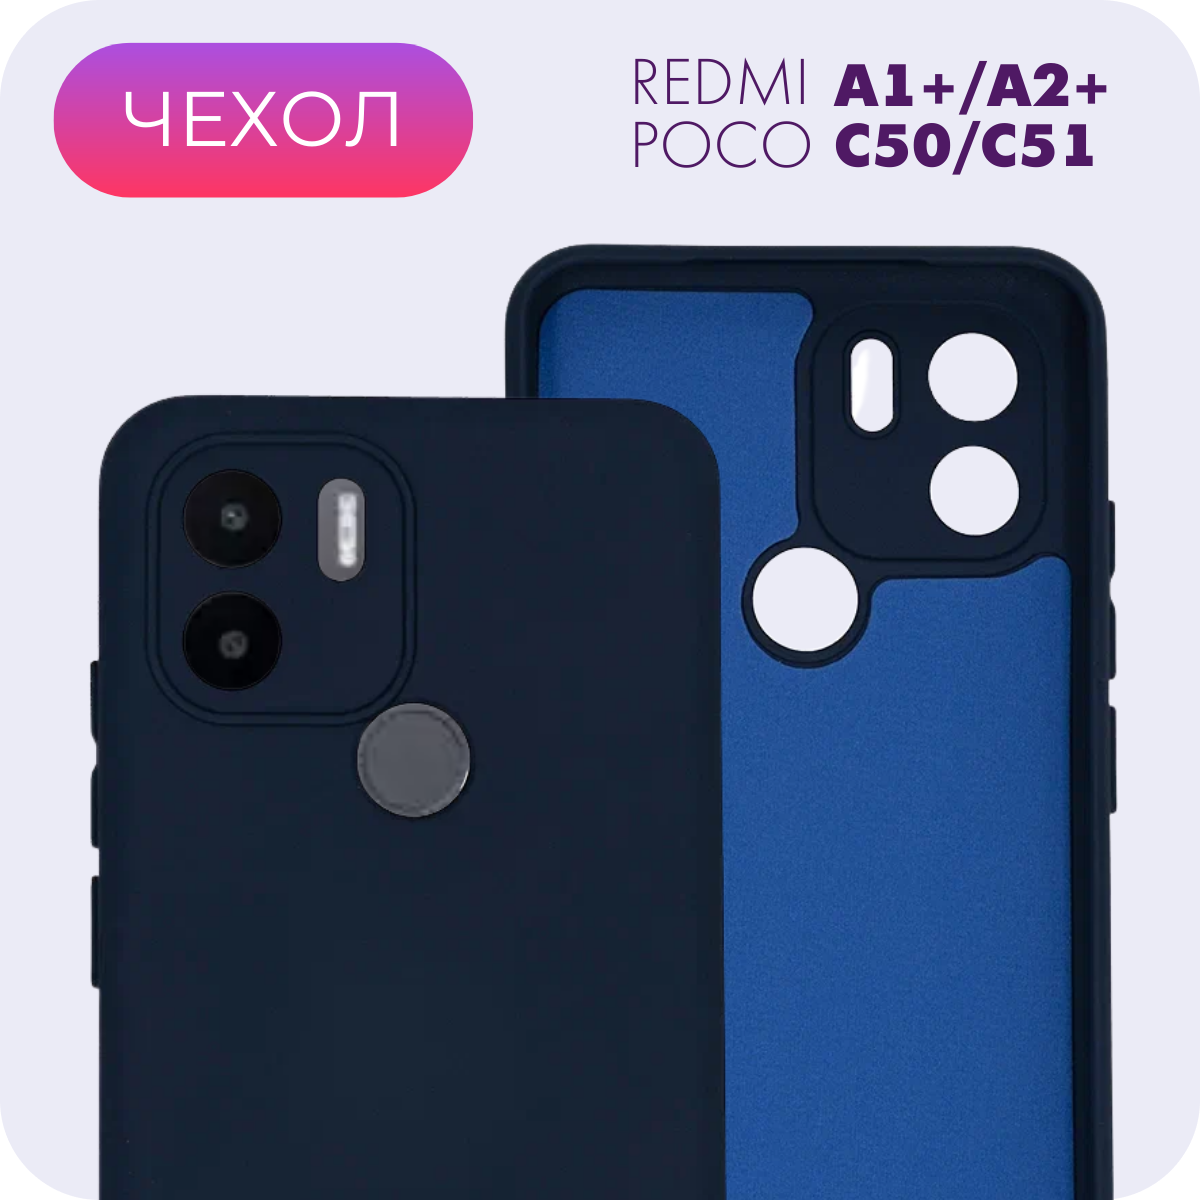 Противоударный матовый чехол с защитой камеры №25 Silicone Case для Xiaomi Redmi A1+/A2+/Poco C50/C51 (Ксиоми Редми А1+/А2+/Поко Ц50/Ц51)